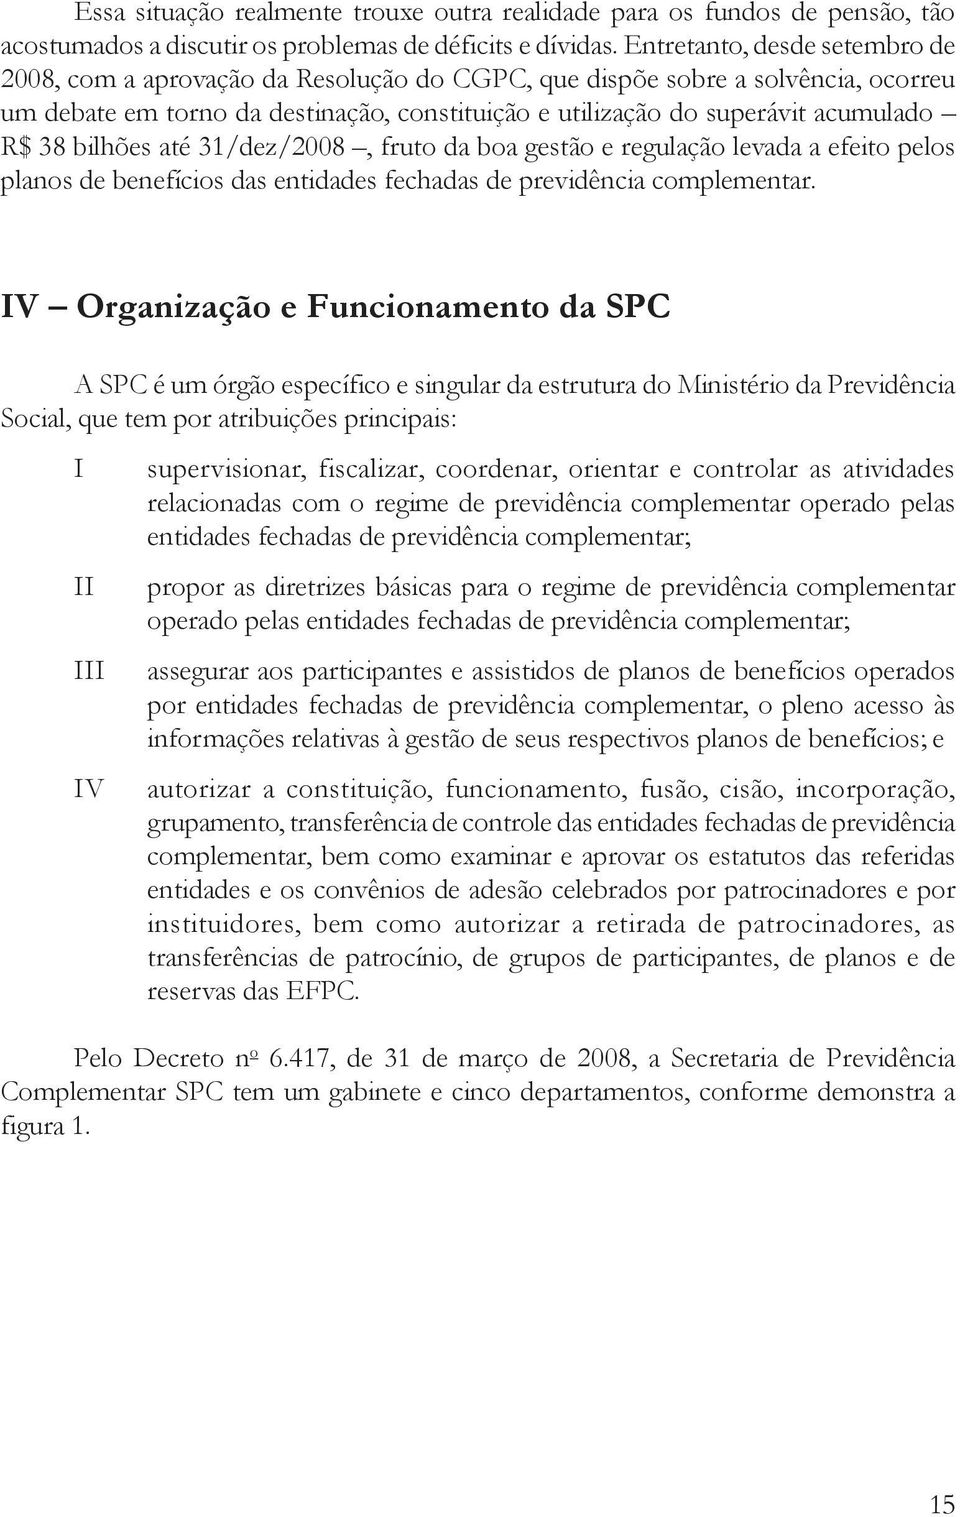 38 bilhões até 31/dez/2008, fruto da boa gestão e regulação levada a efeito pelos planos de benefícios das entidades fechadas de previdência complementar.